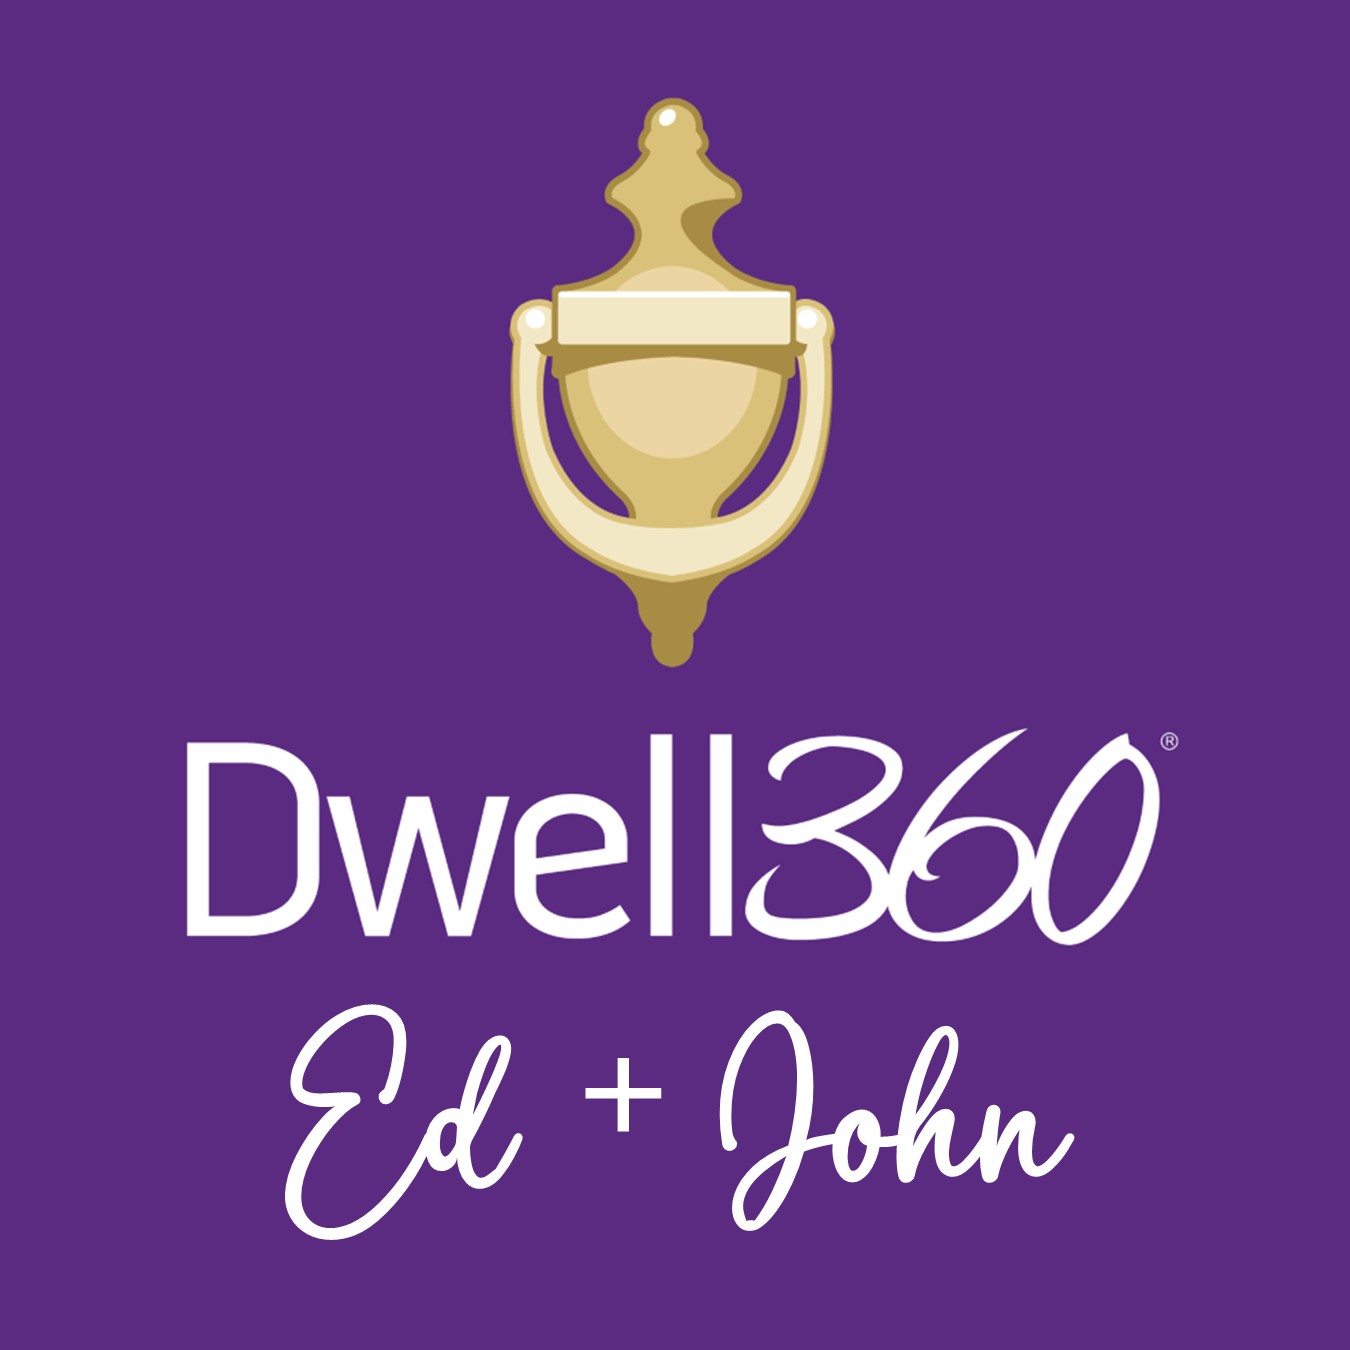 Dwell360 Real Estate